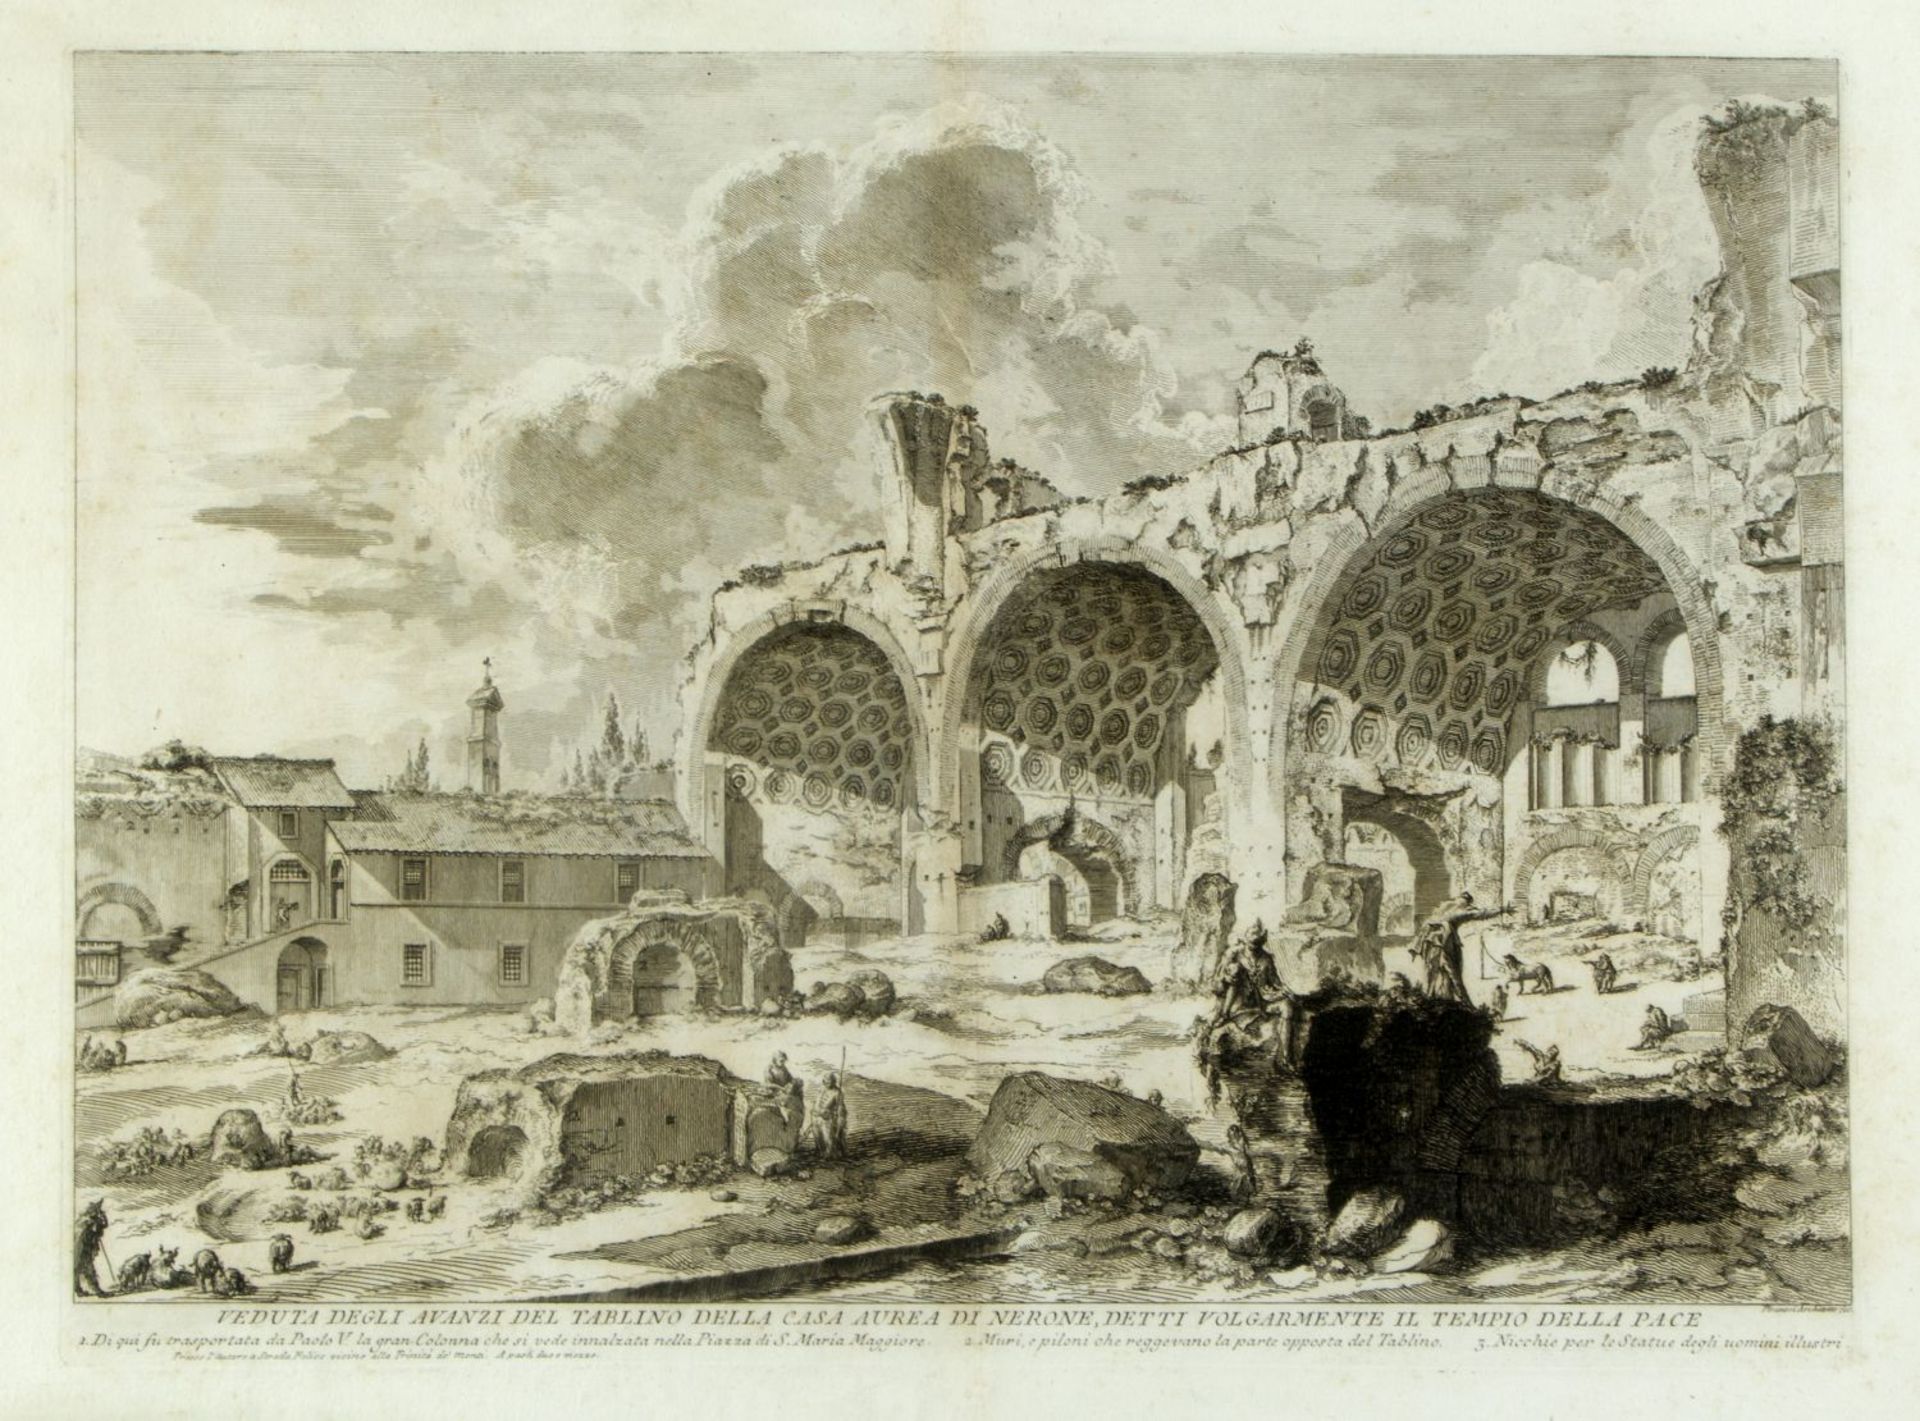 Piranesi, Giovanni-Battista. 1720 - Rom - 1778Veduta degli avanzi del tablino della Cas